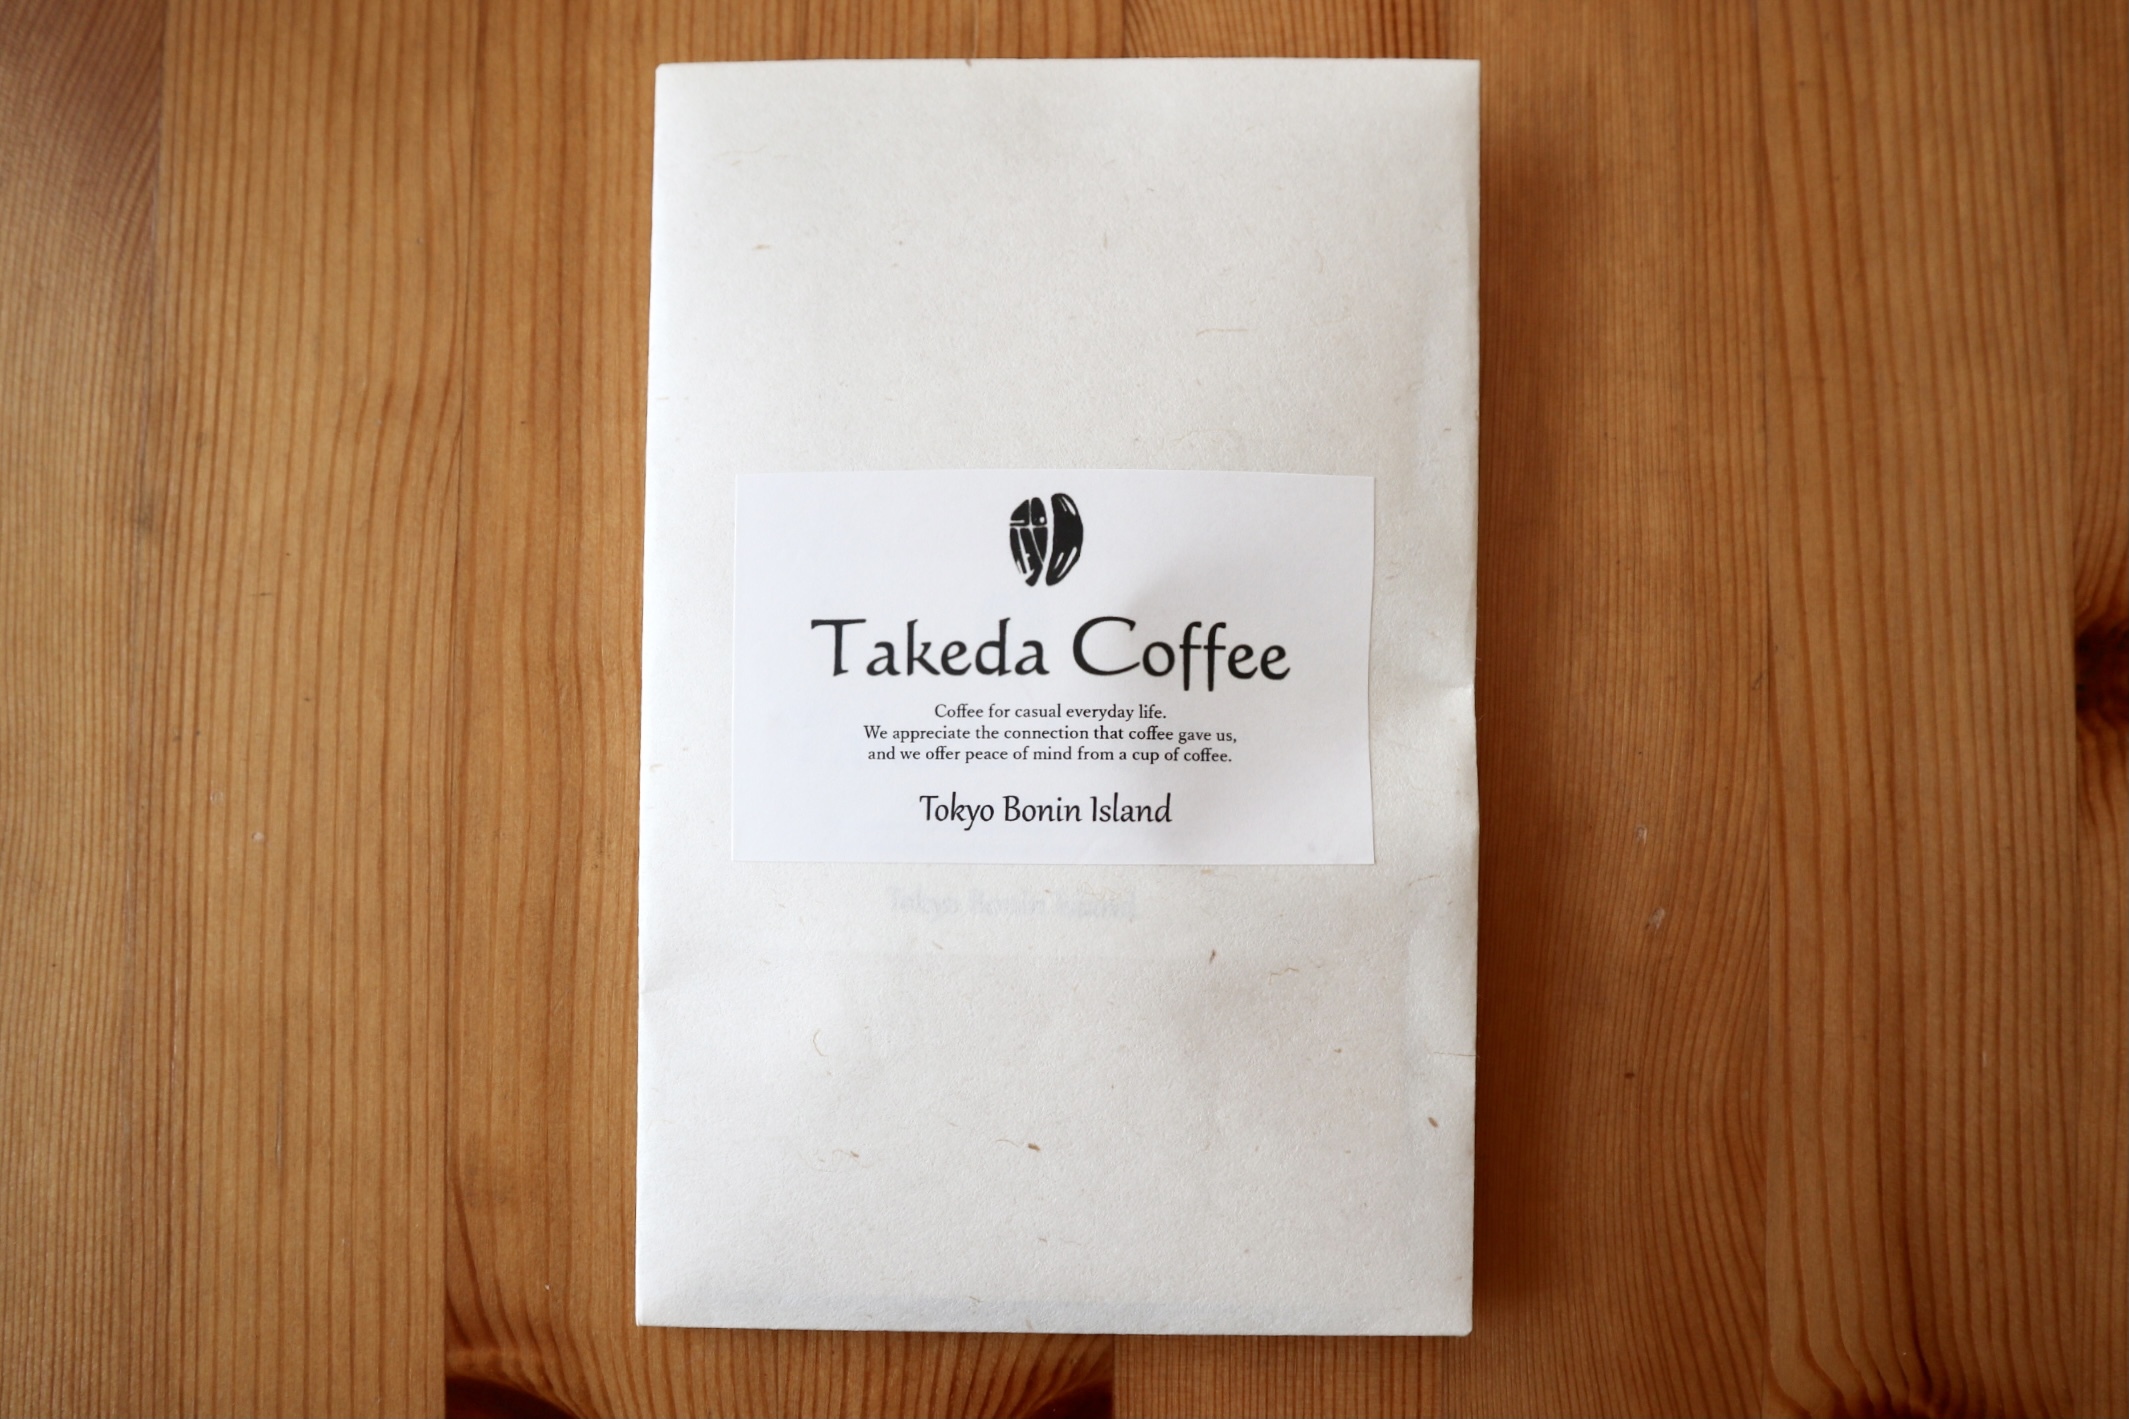 東京ボニンアイランド 小笠原父島 コーヒー ドリップパック1個 Takeda Coffee